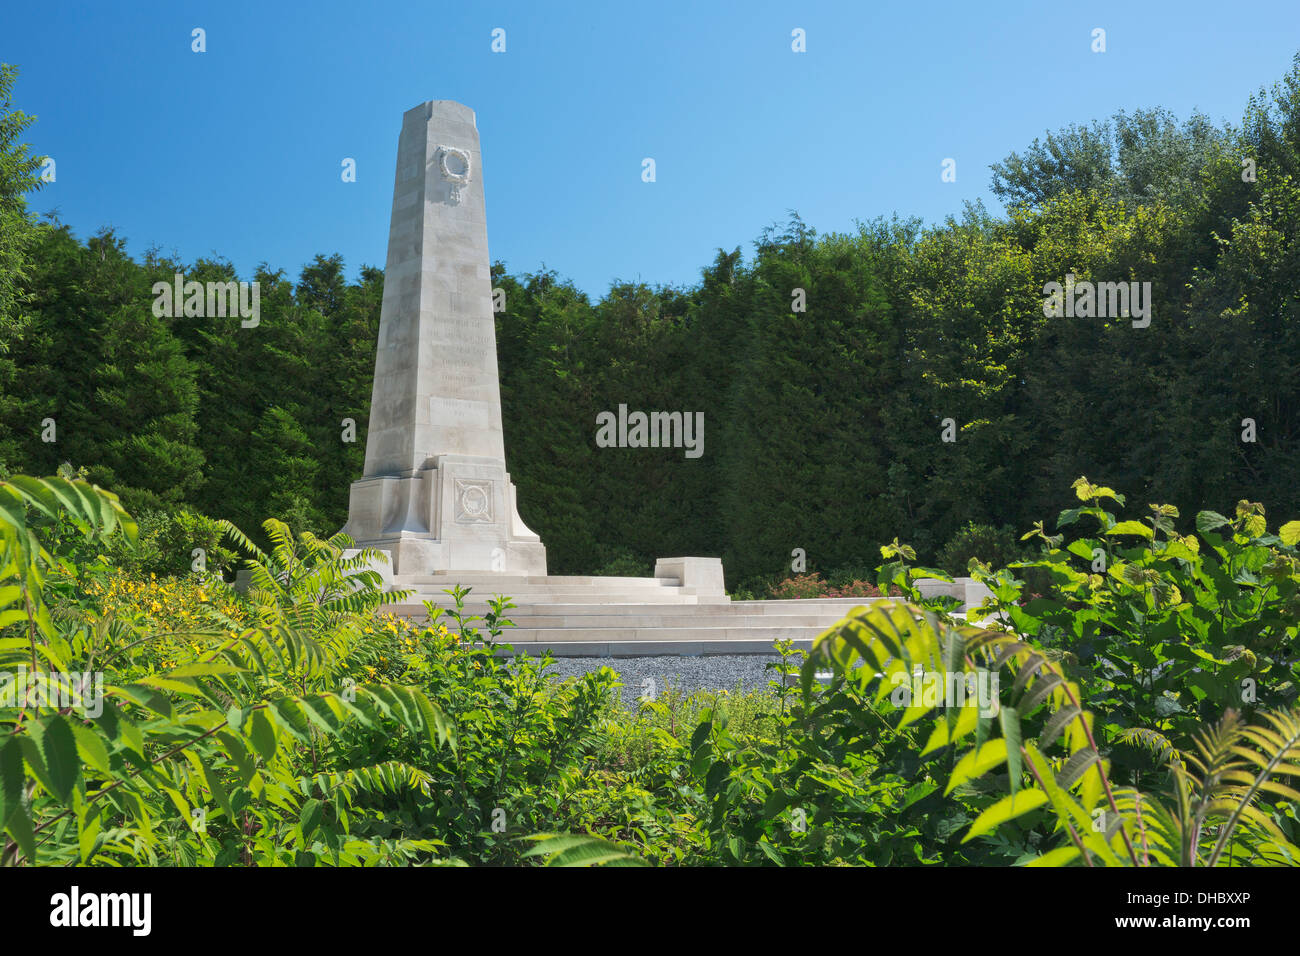 New Zealand battlefield memorial Stock Photo